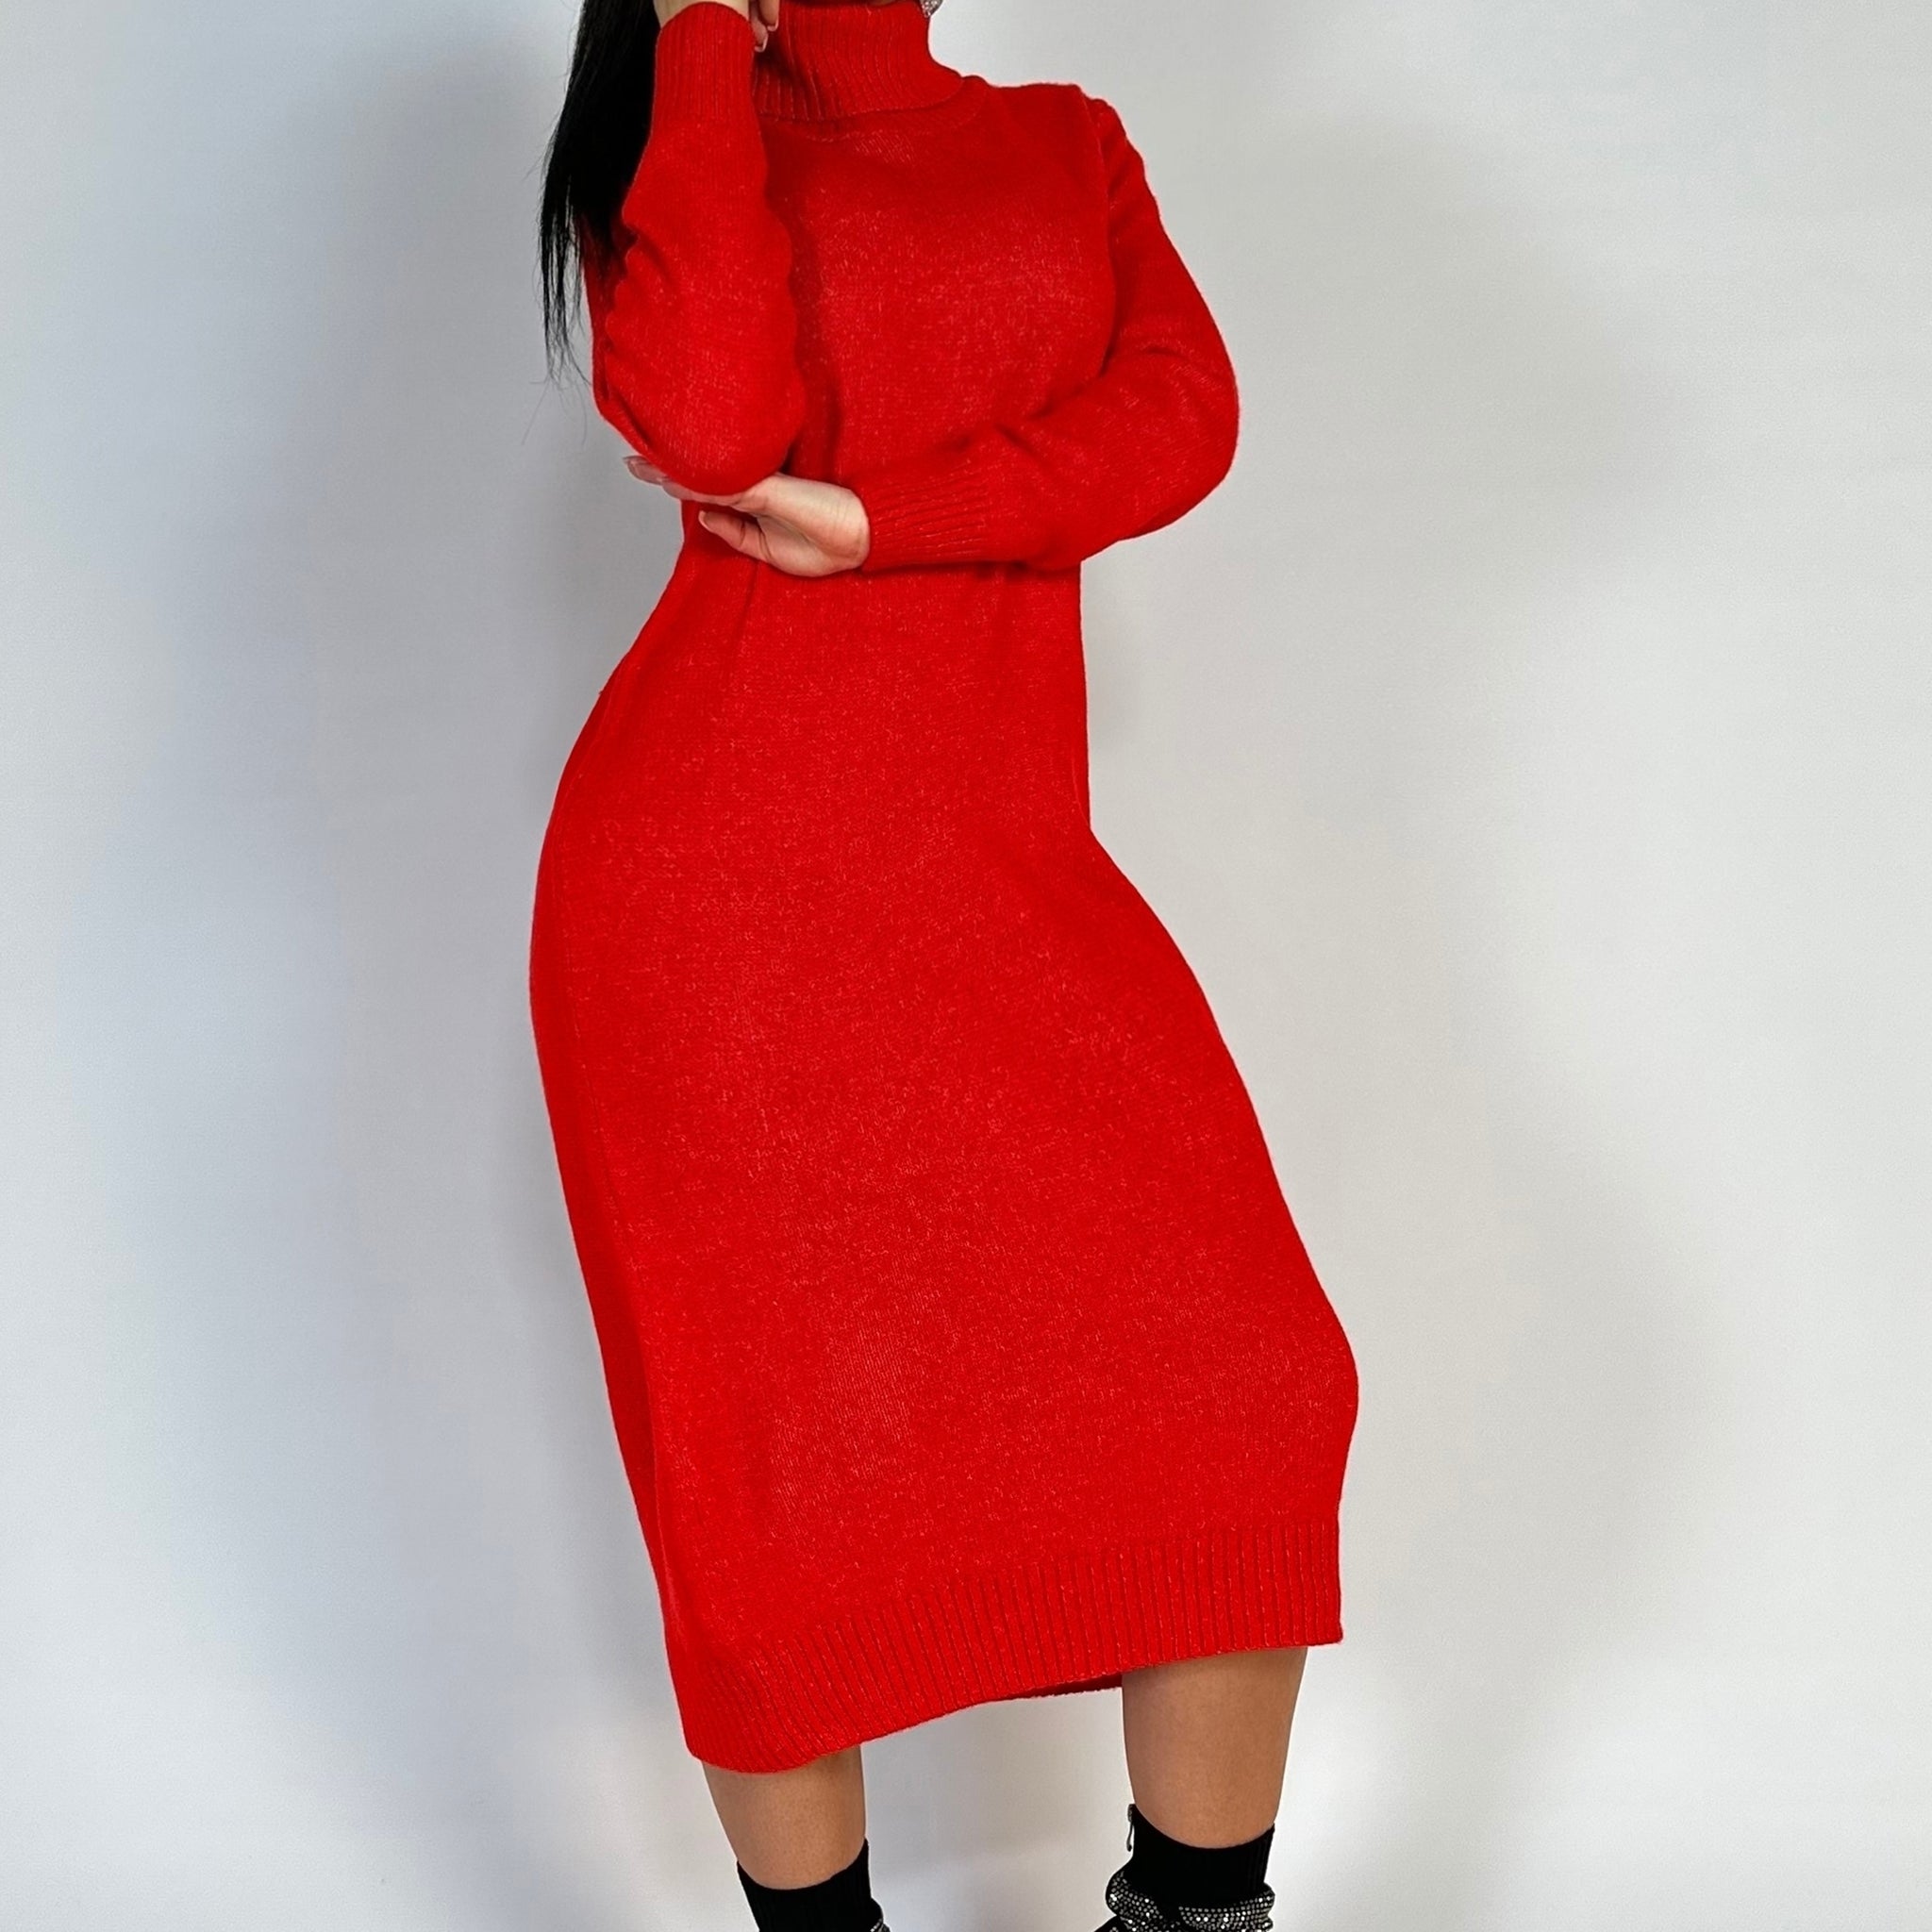 Rochie lunga tip pulover cu guler inalt din material crosetat H760-3